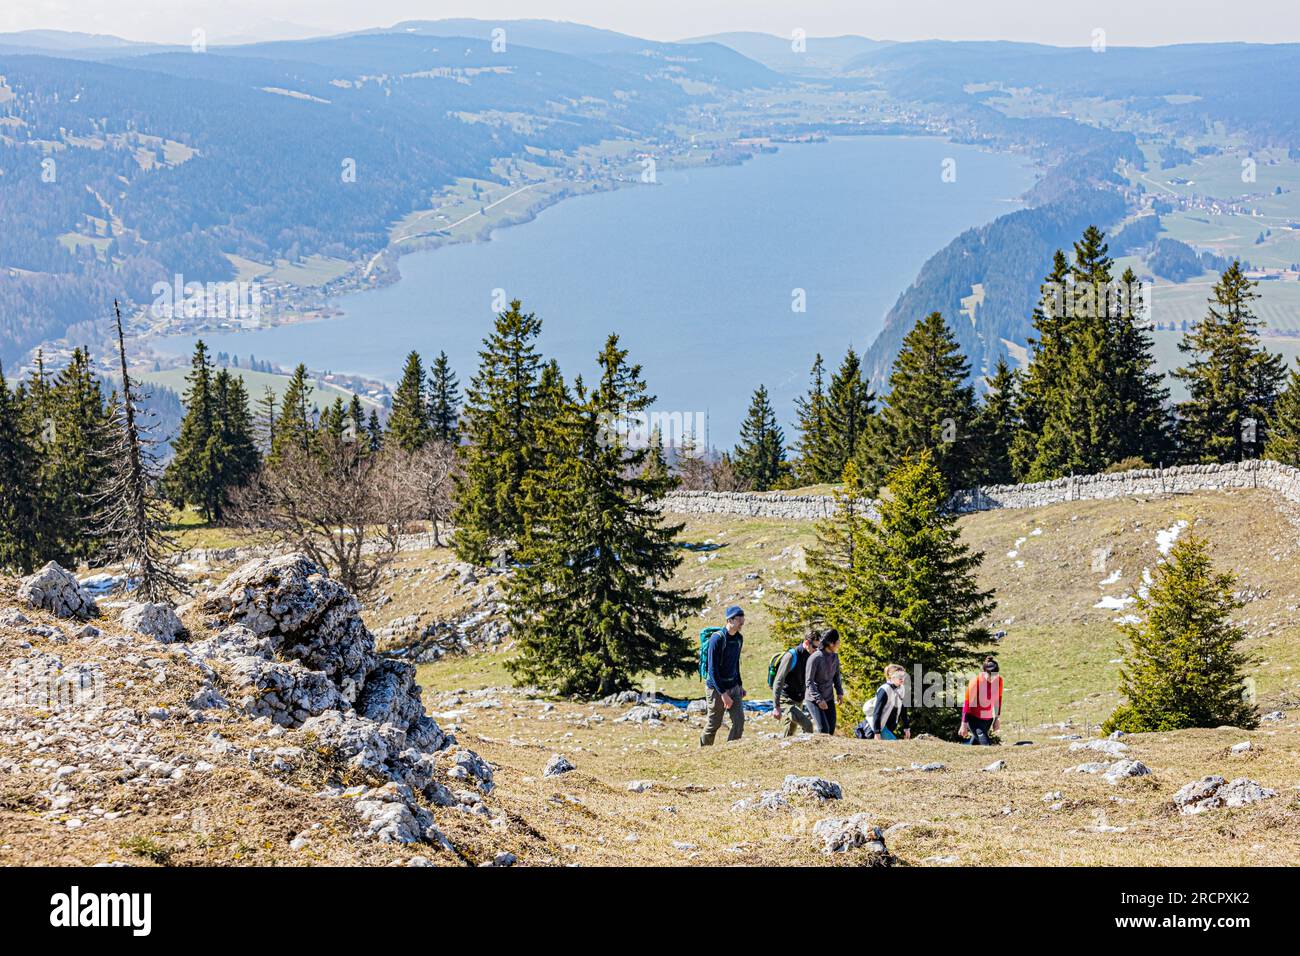 La Dent de Vaulion en Suisse dans la vallée de Joux, cantone di Vaud. Située à 1500 m d'altitudine avec un panorama à 360°. Vue sur le lac de Joux. Lorsqu Foto Stock